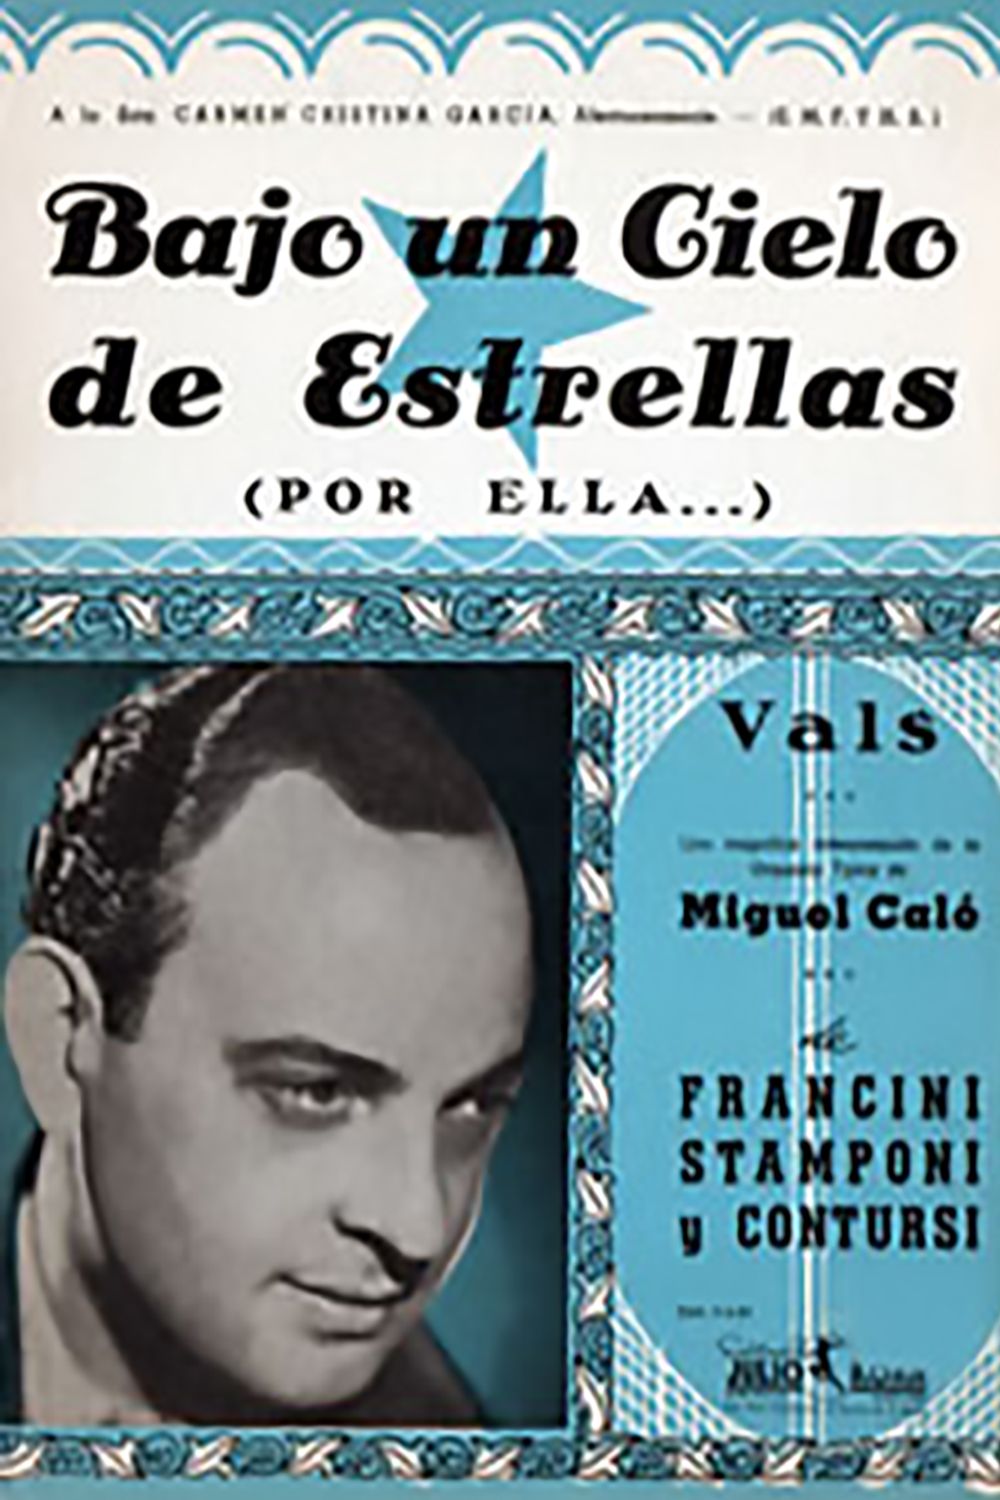 "Bajo un cielo de estrellas", Argentine Tango music sheet cover.